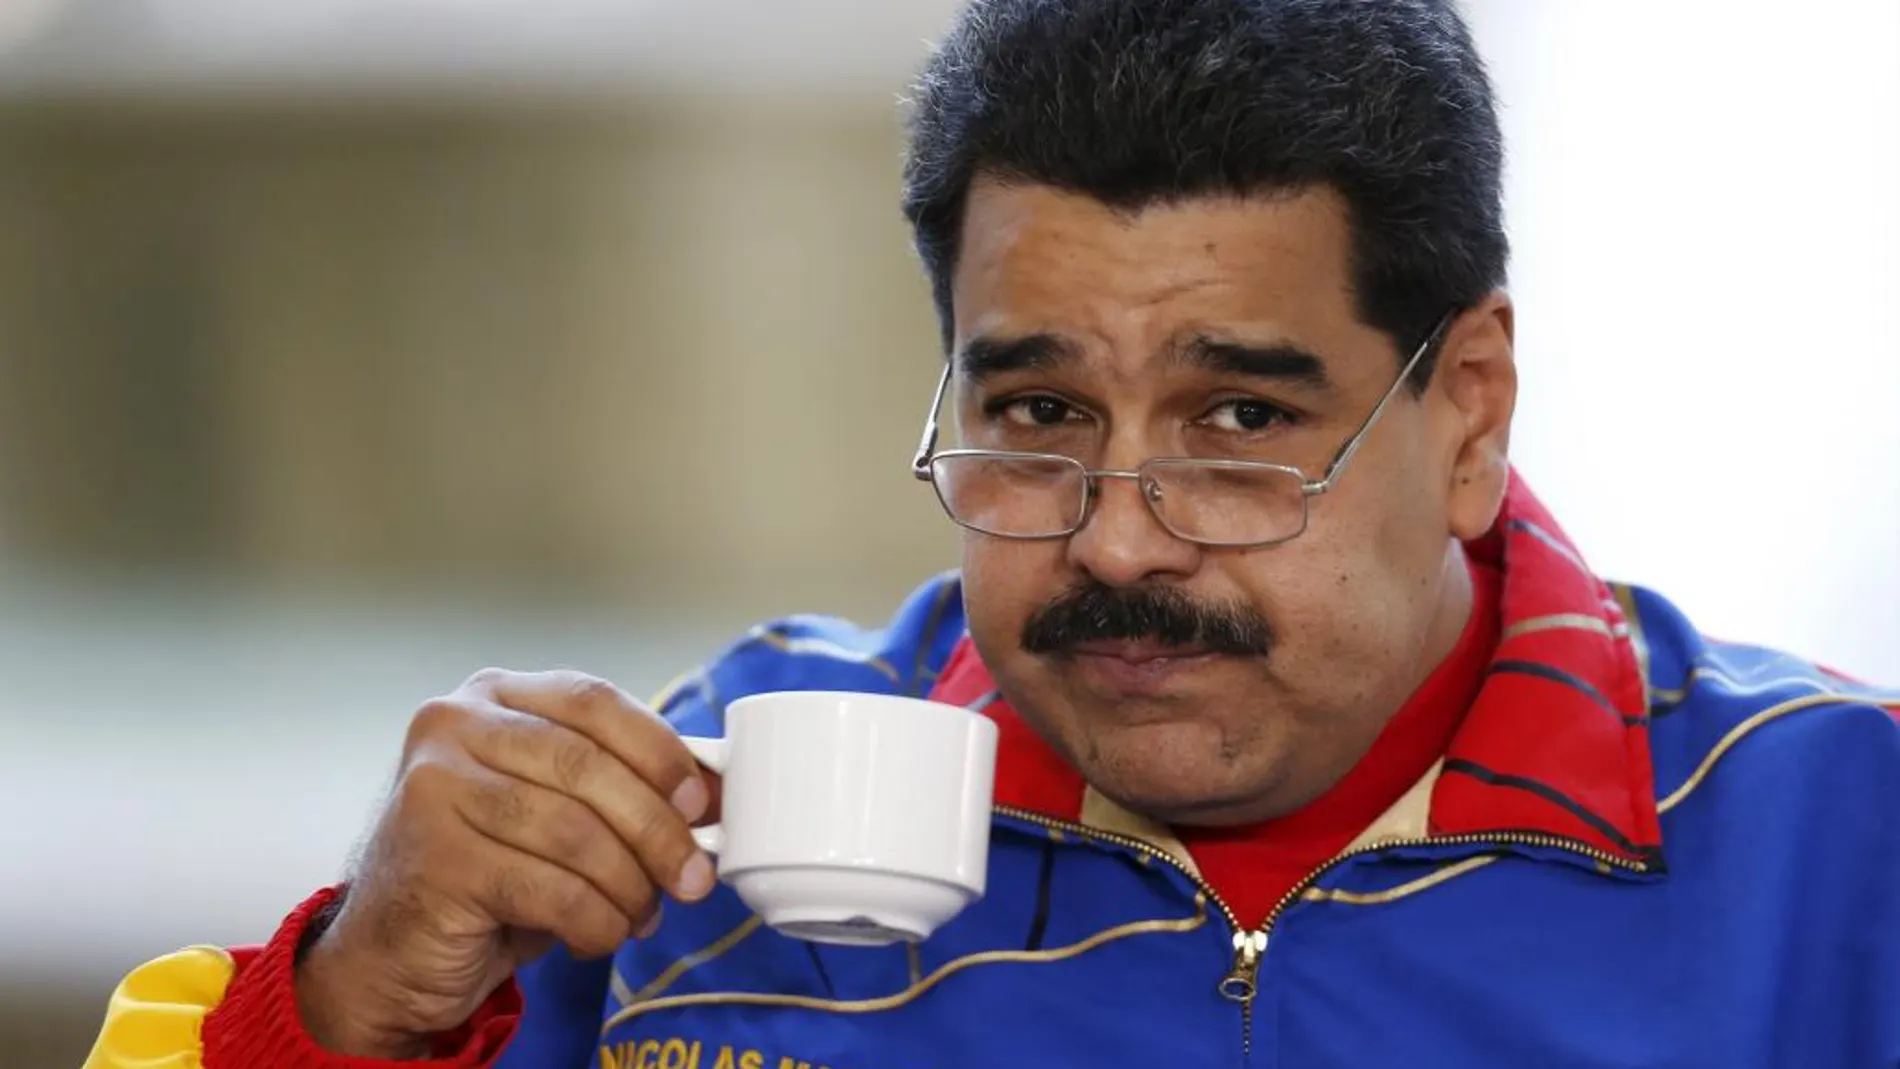 El presidente de Venezuela, Nicolás Maduro, arremete nuevamente contra el presidente español, Mariano Rajoy